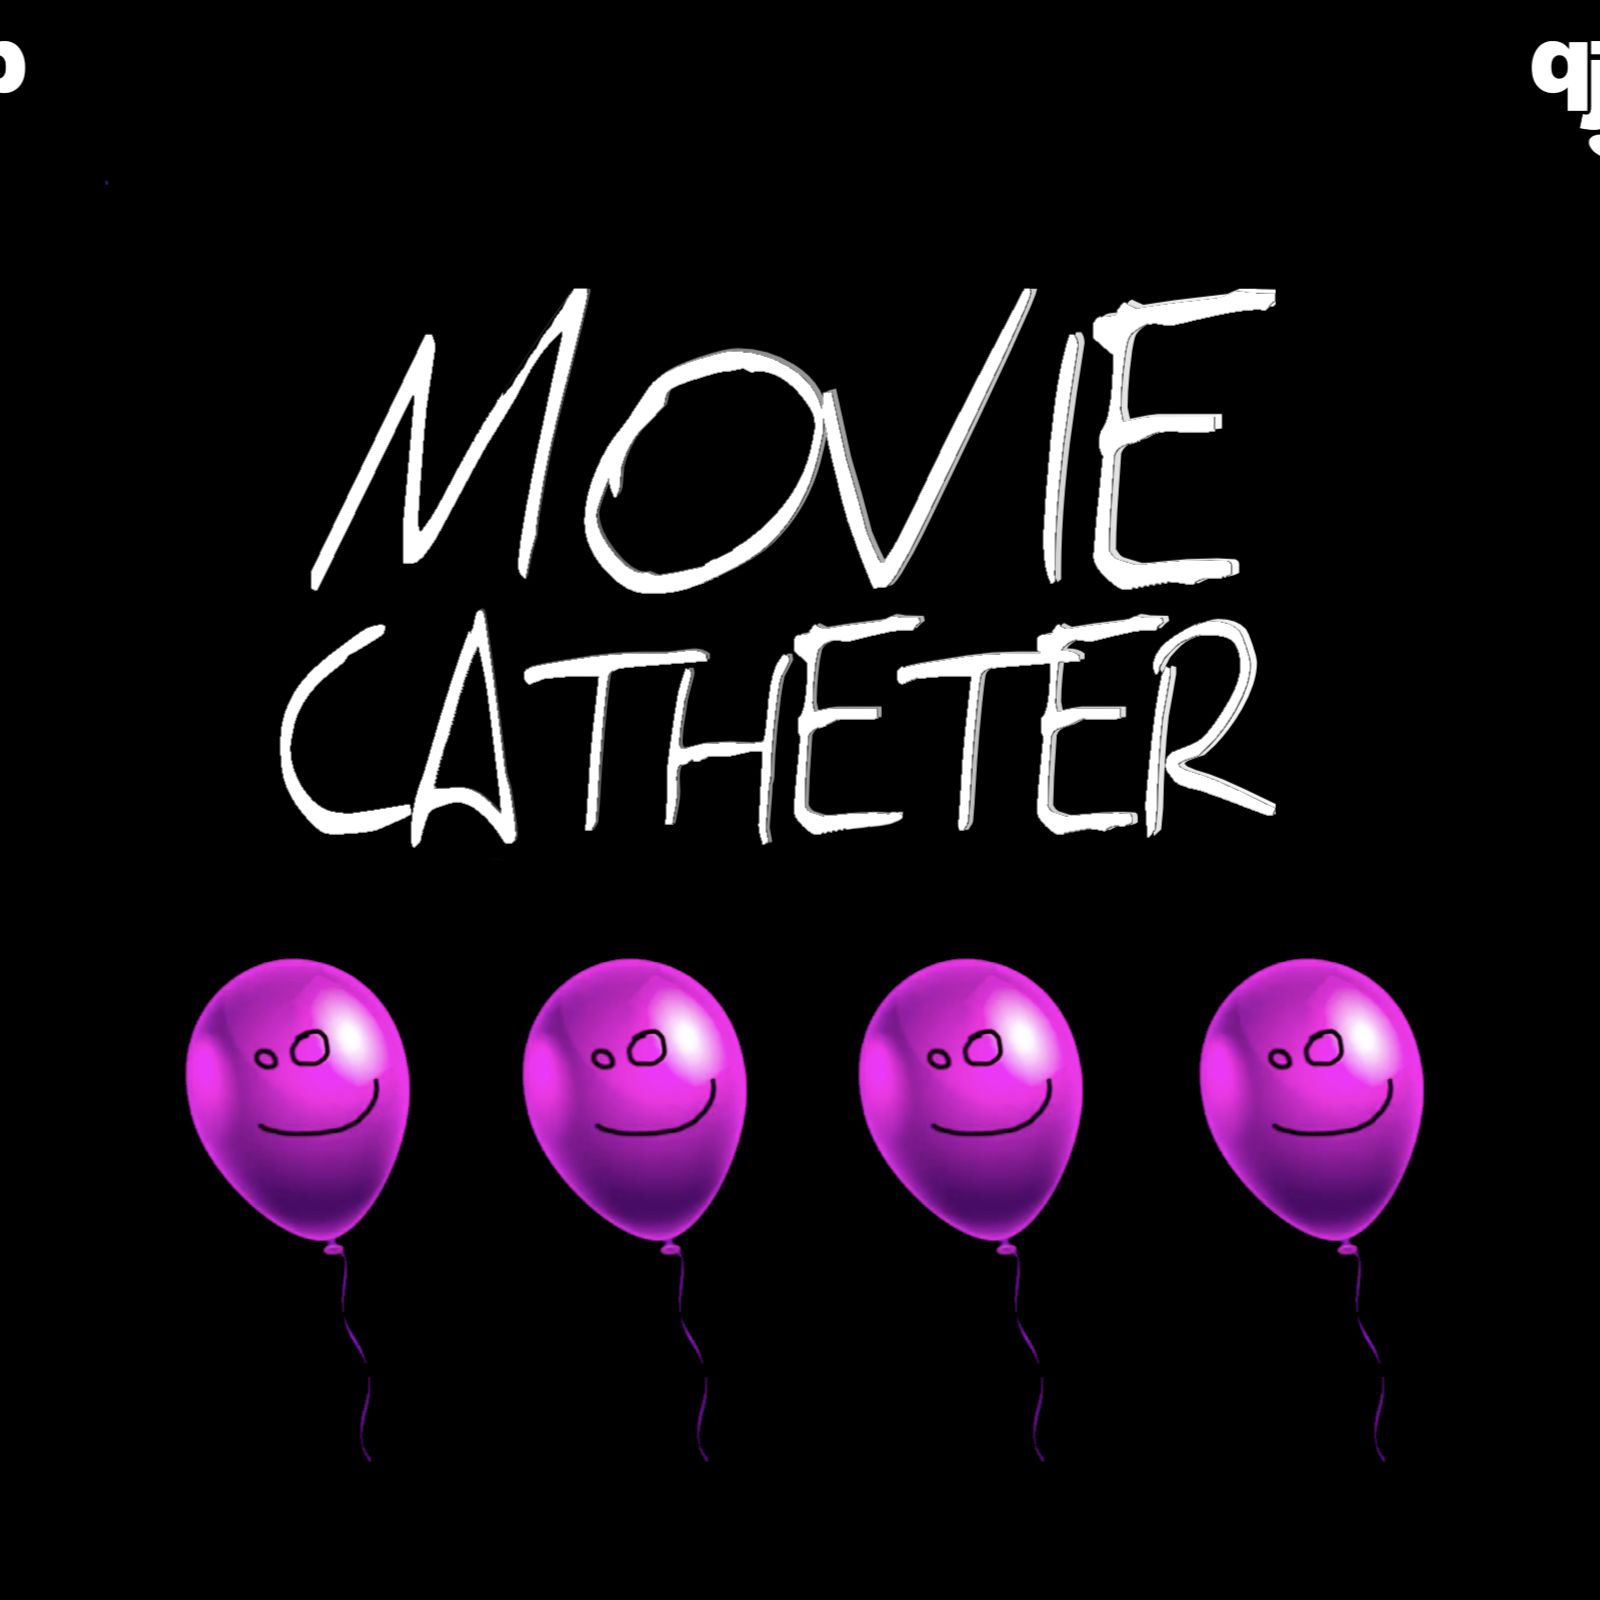 Movie Catheter